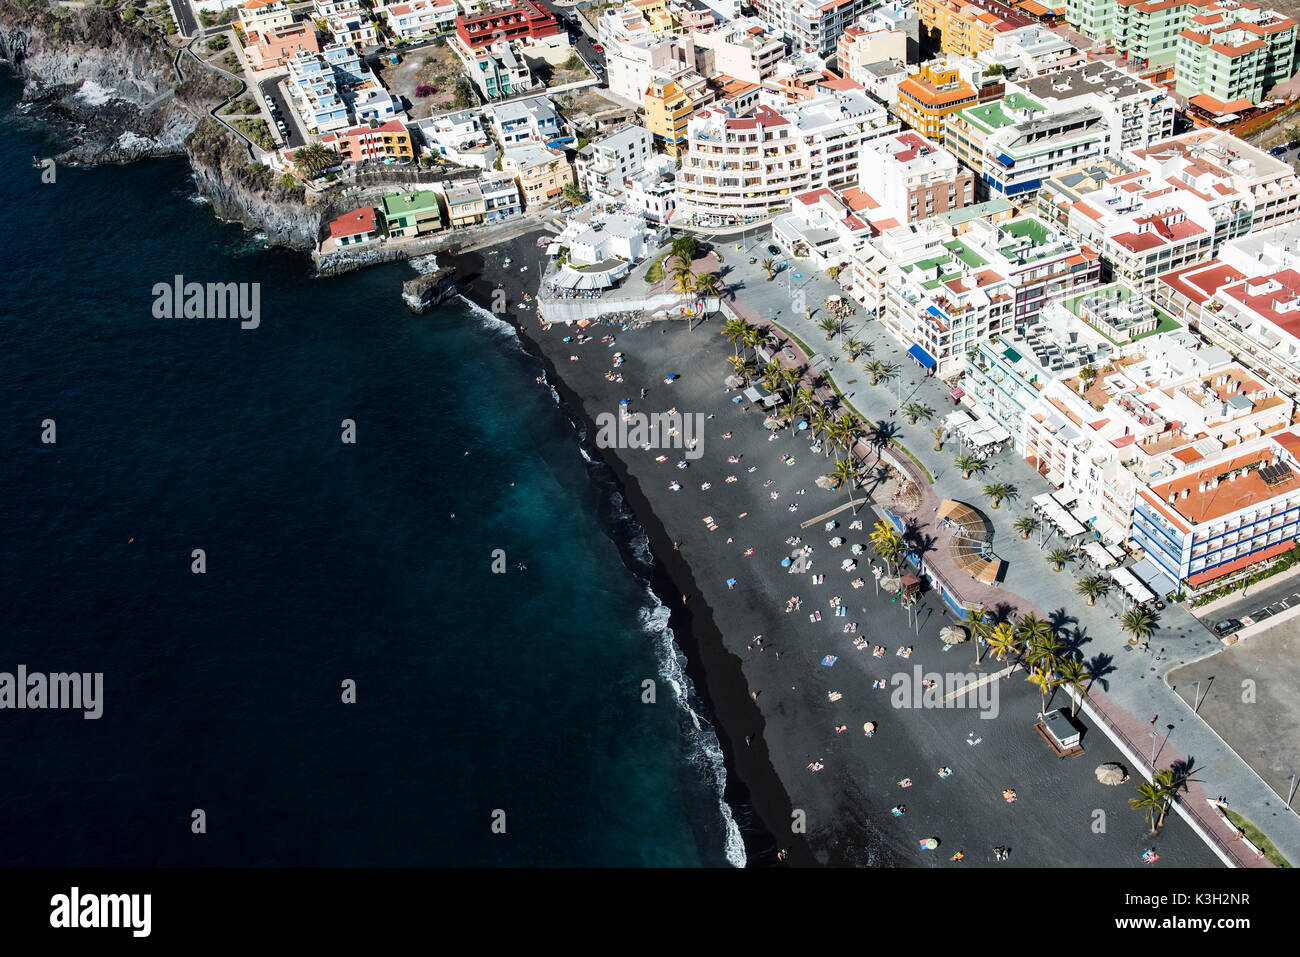 Puerto de Naos, côte Atlantique, volcano beach, plage, promenade proche centre, photo aérienne, île de La Palma, aux Canaries, Espagne Banque D'Images